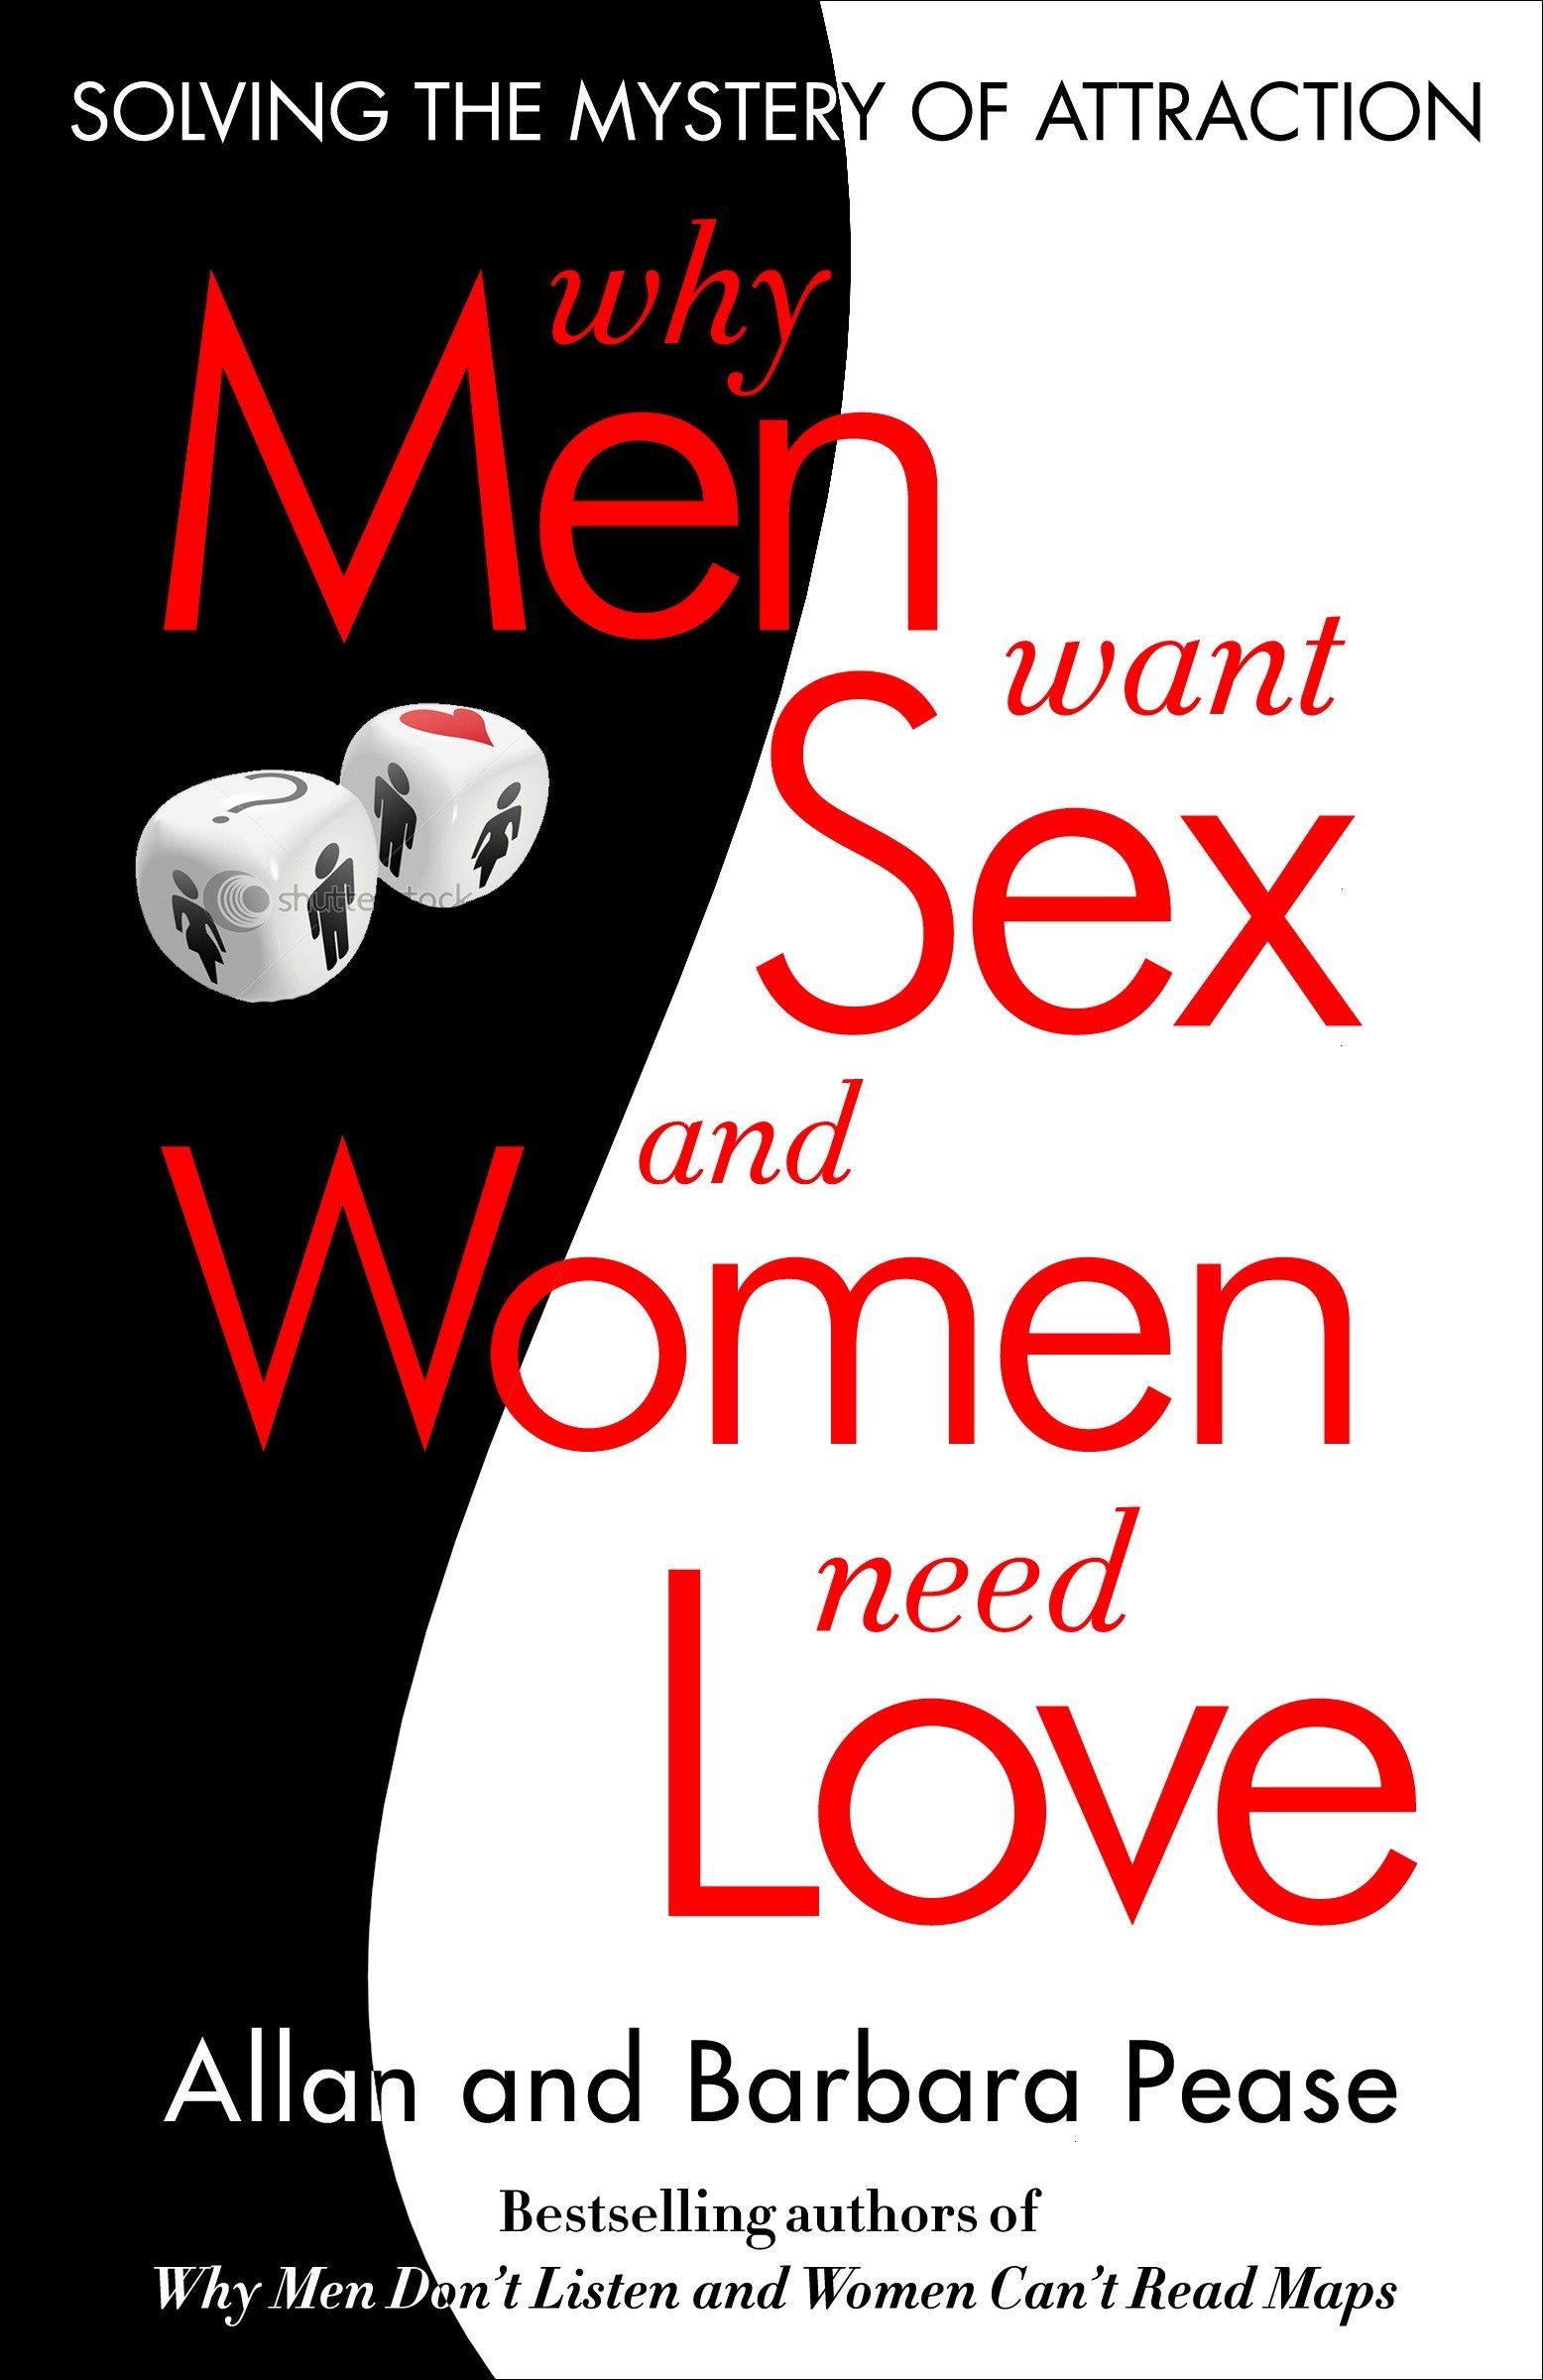 Women do want sex